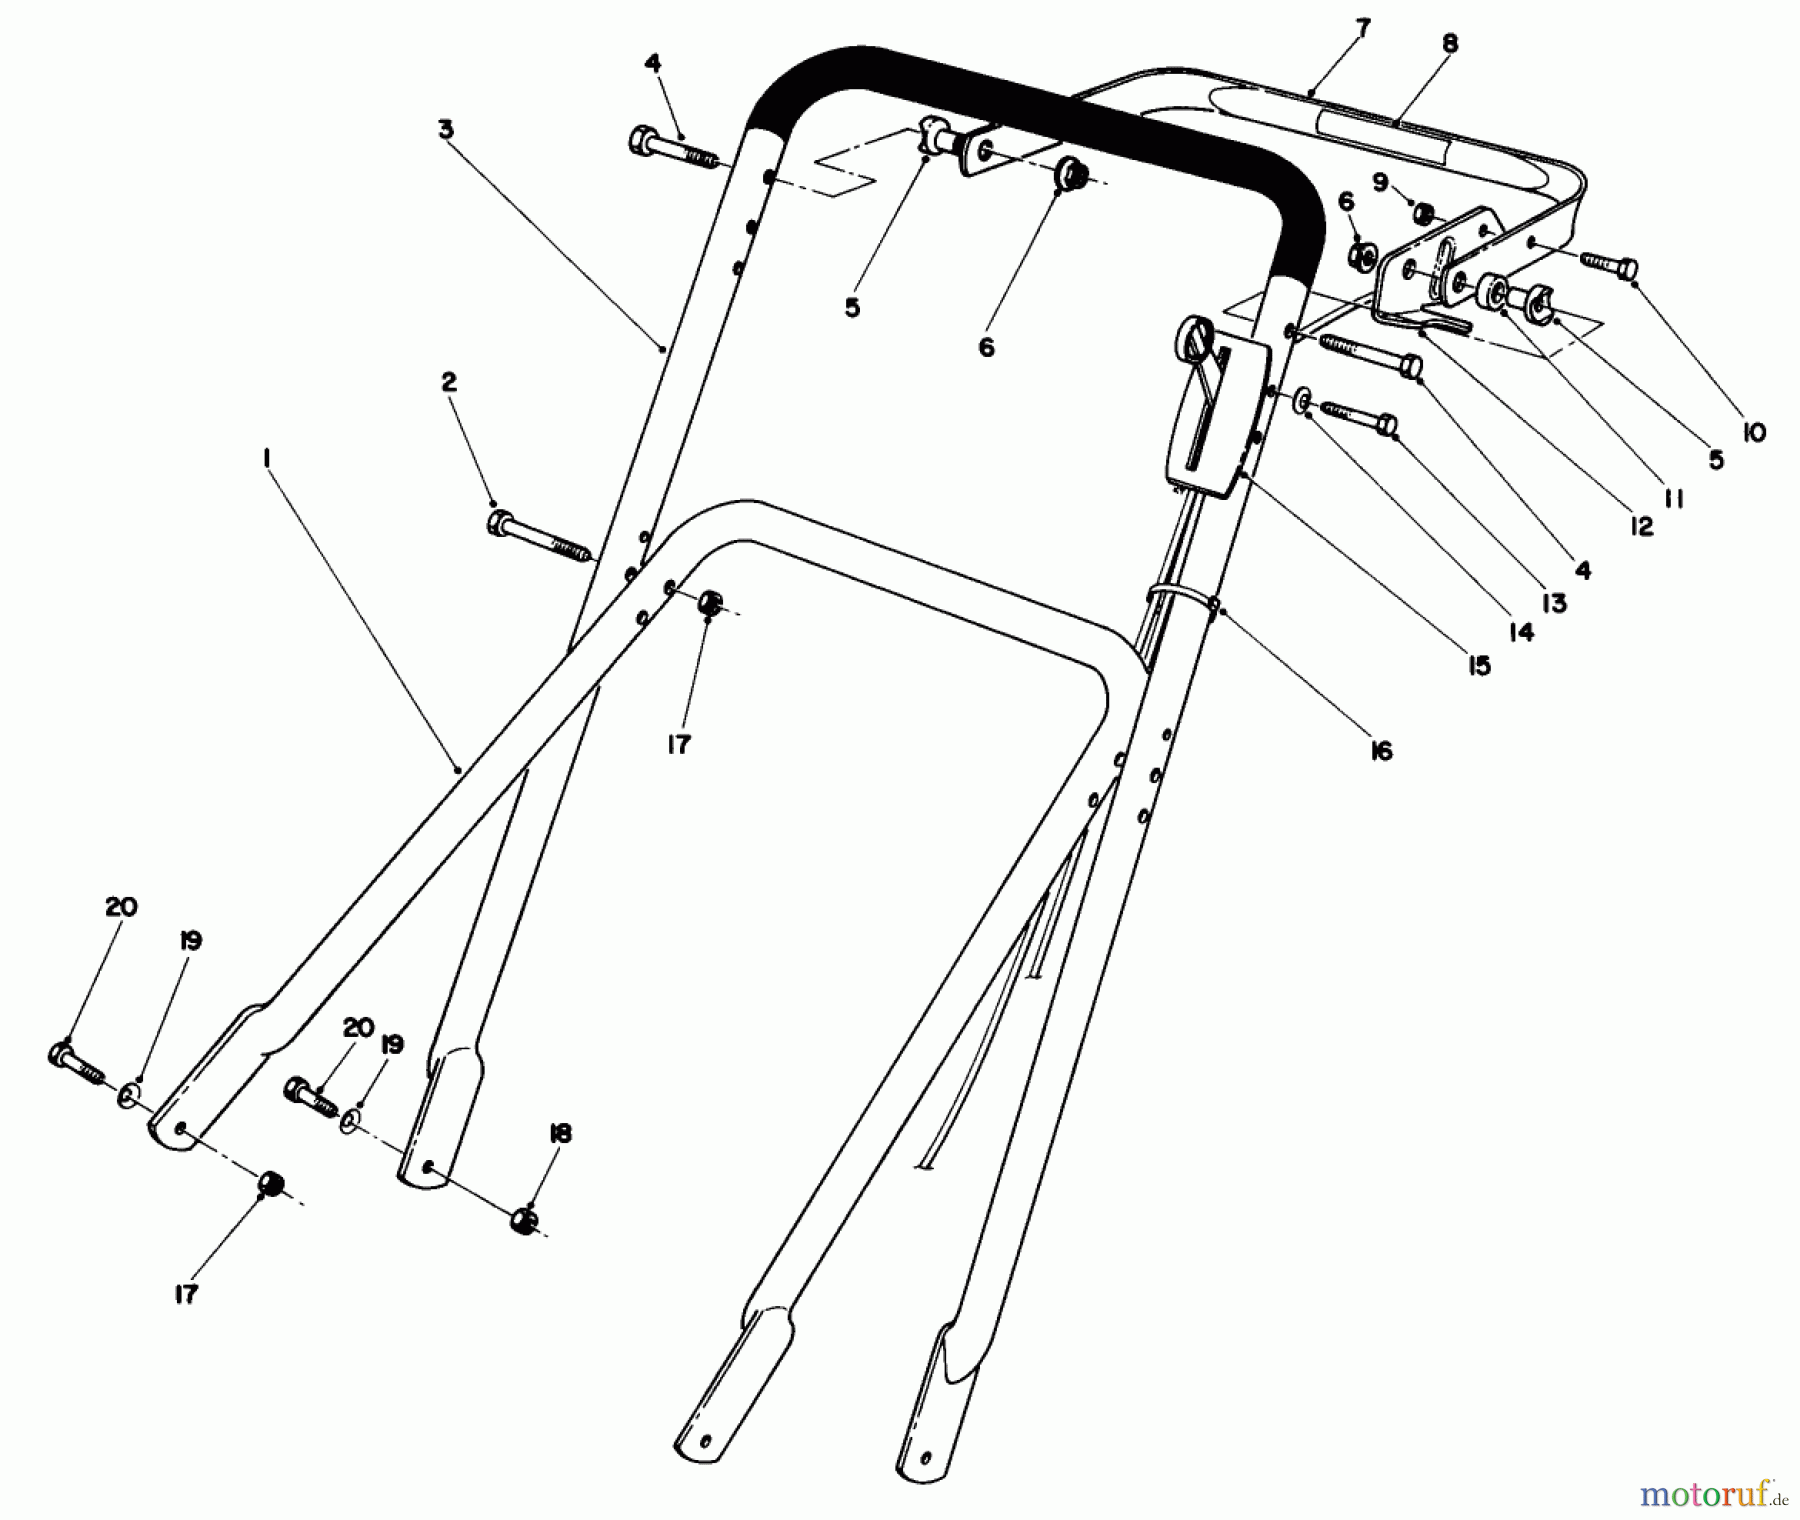  Toro Neu Mowers, Walk-Behind Seite 2 22700C - Toro Lawnmower, 1988 (8000001-8999999) HANDLE ASSEMBLY